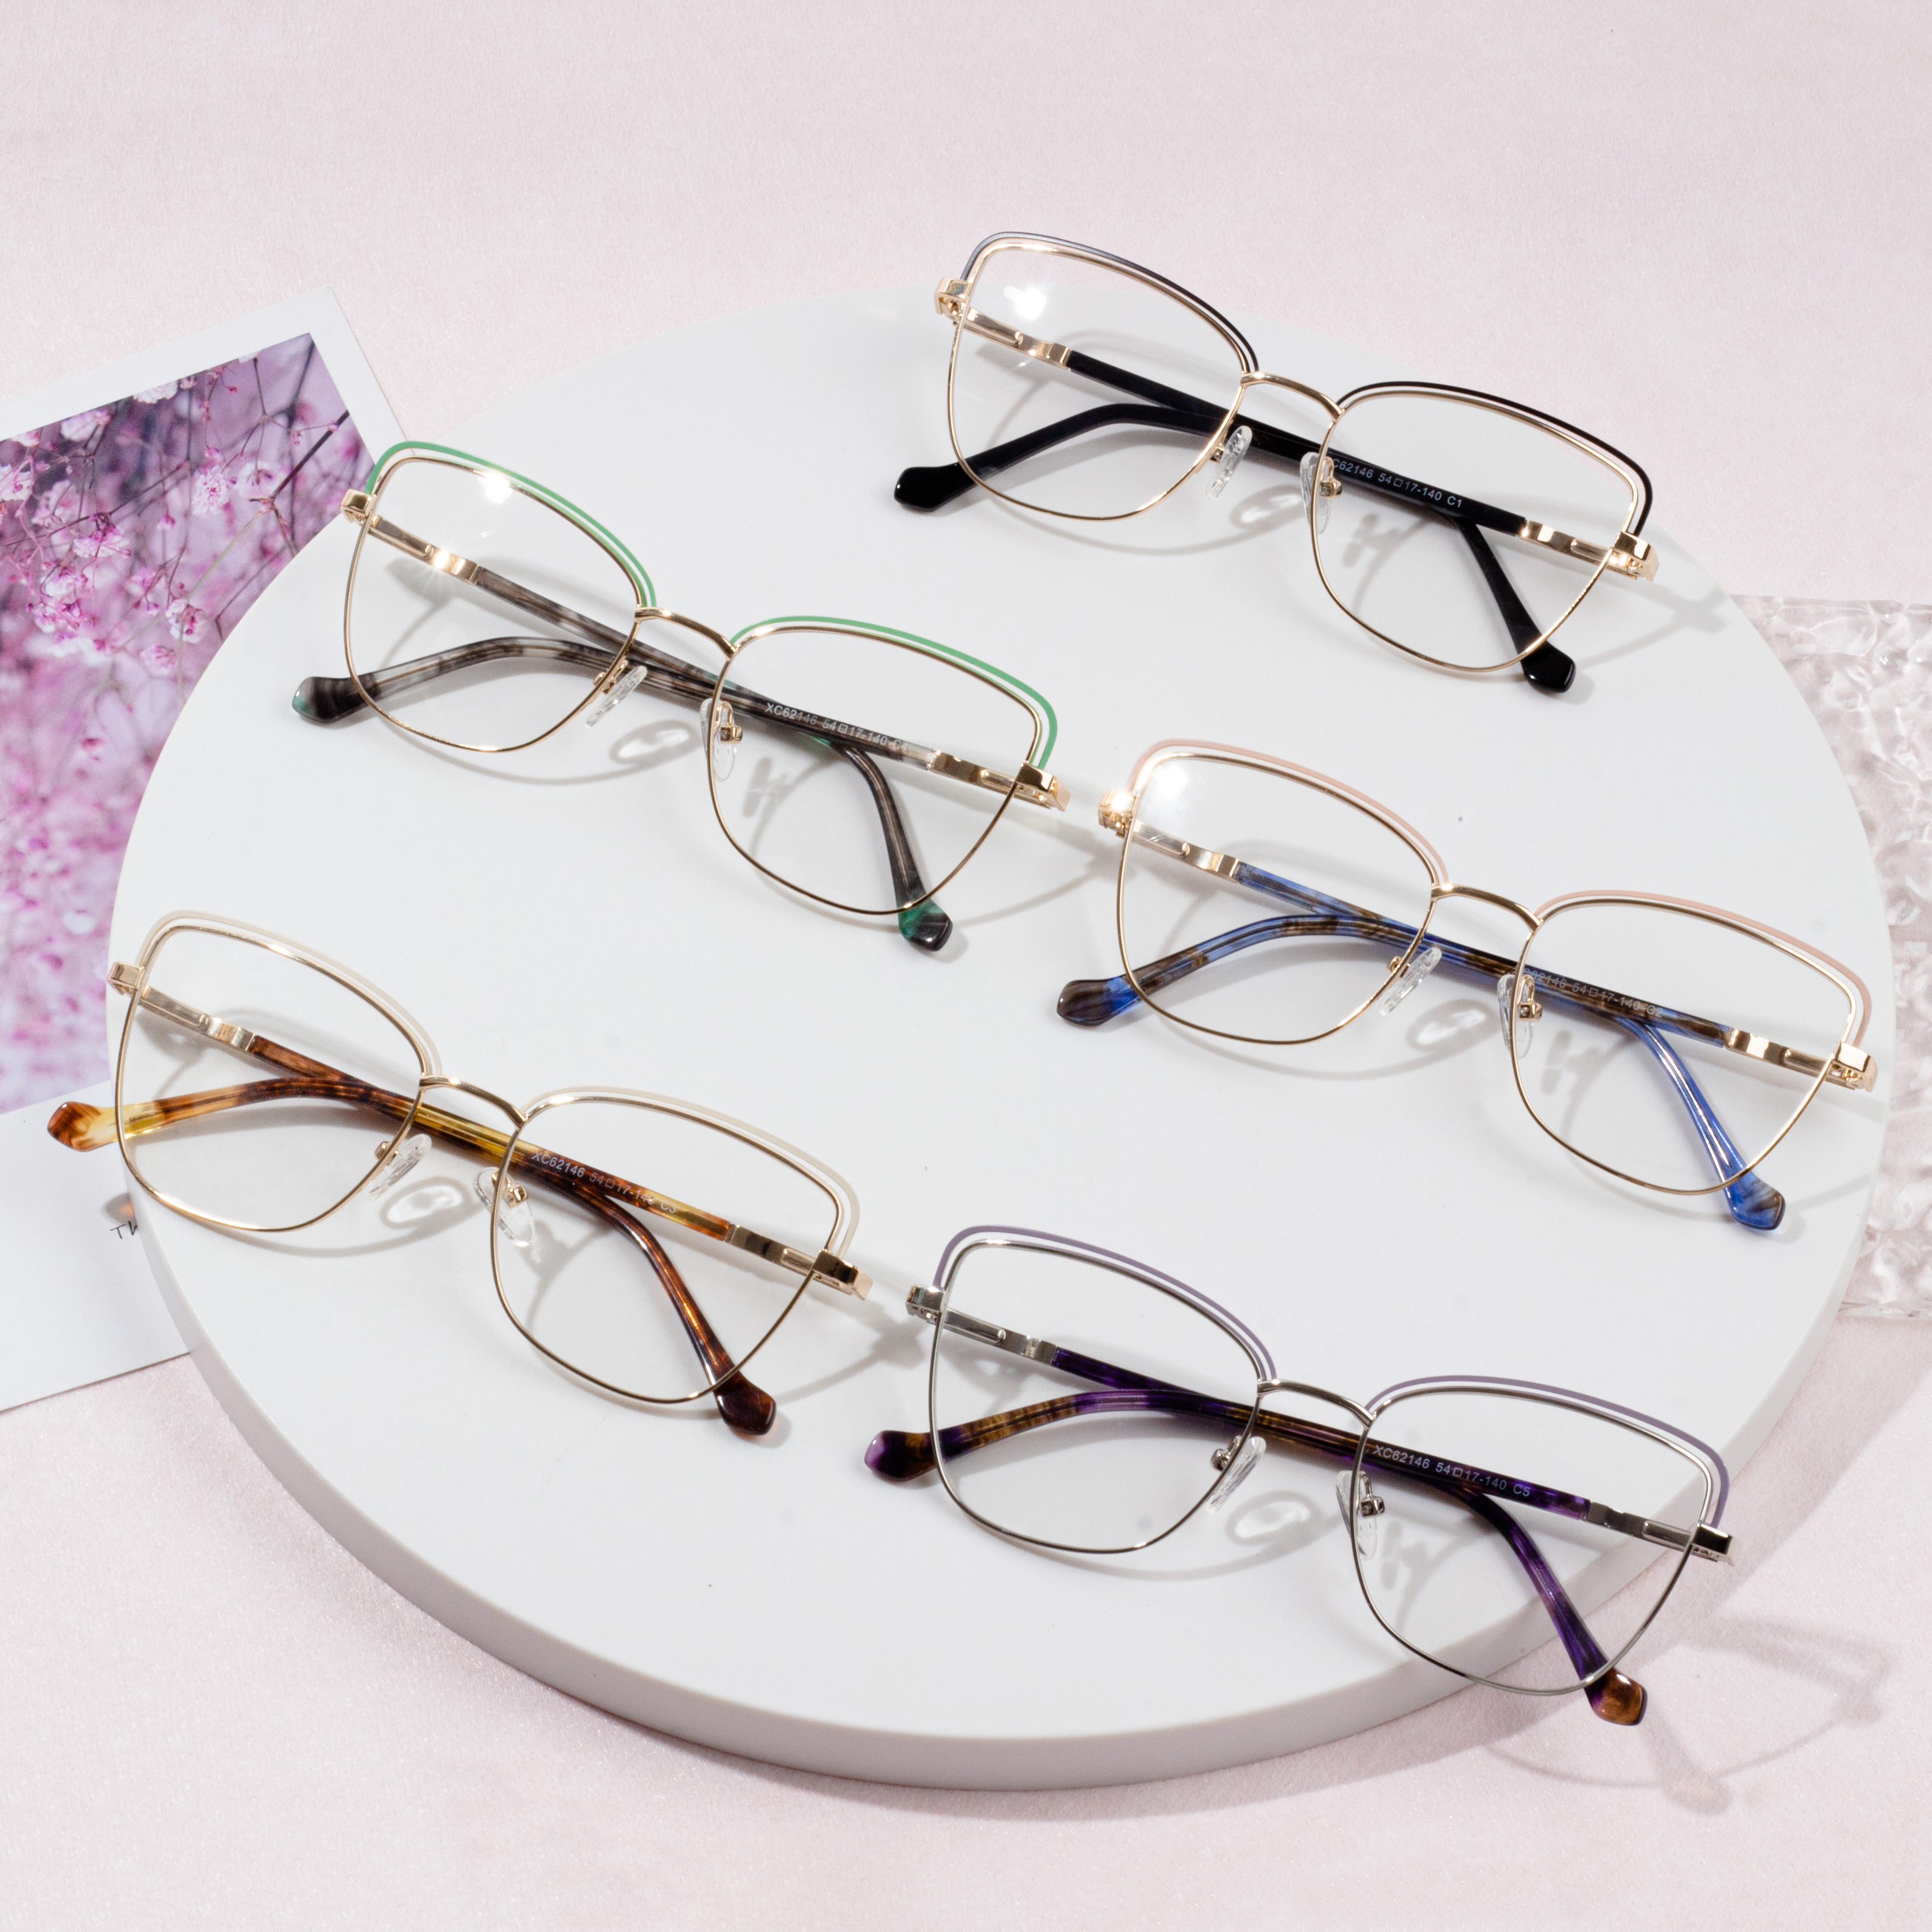 اختيار إطارات النظارات